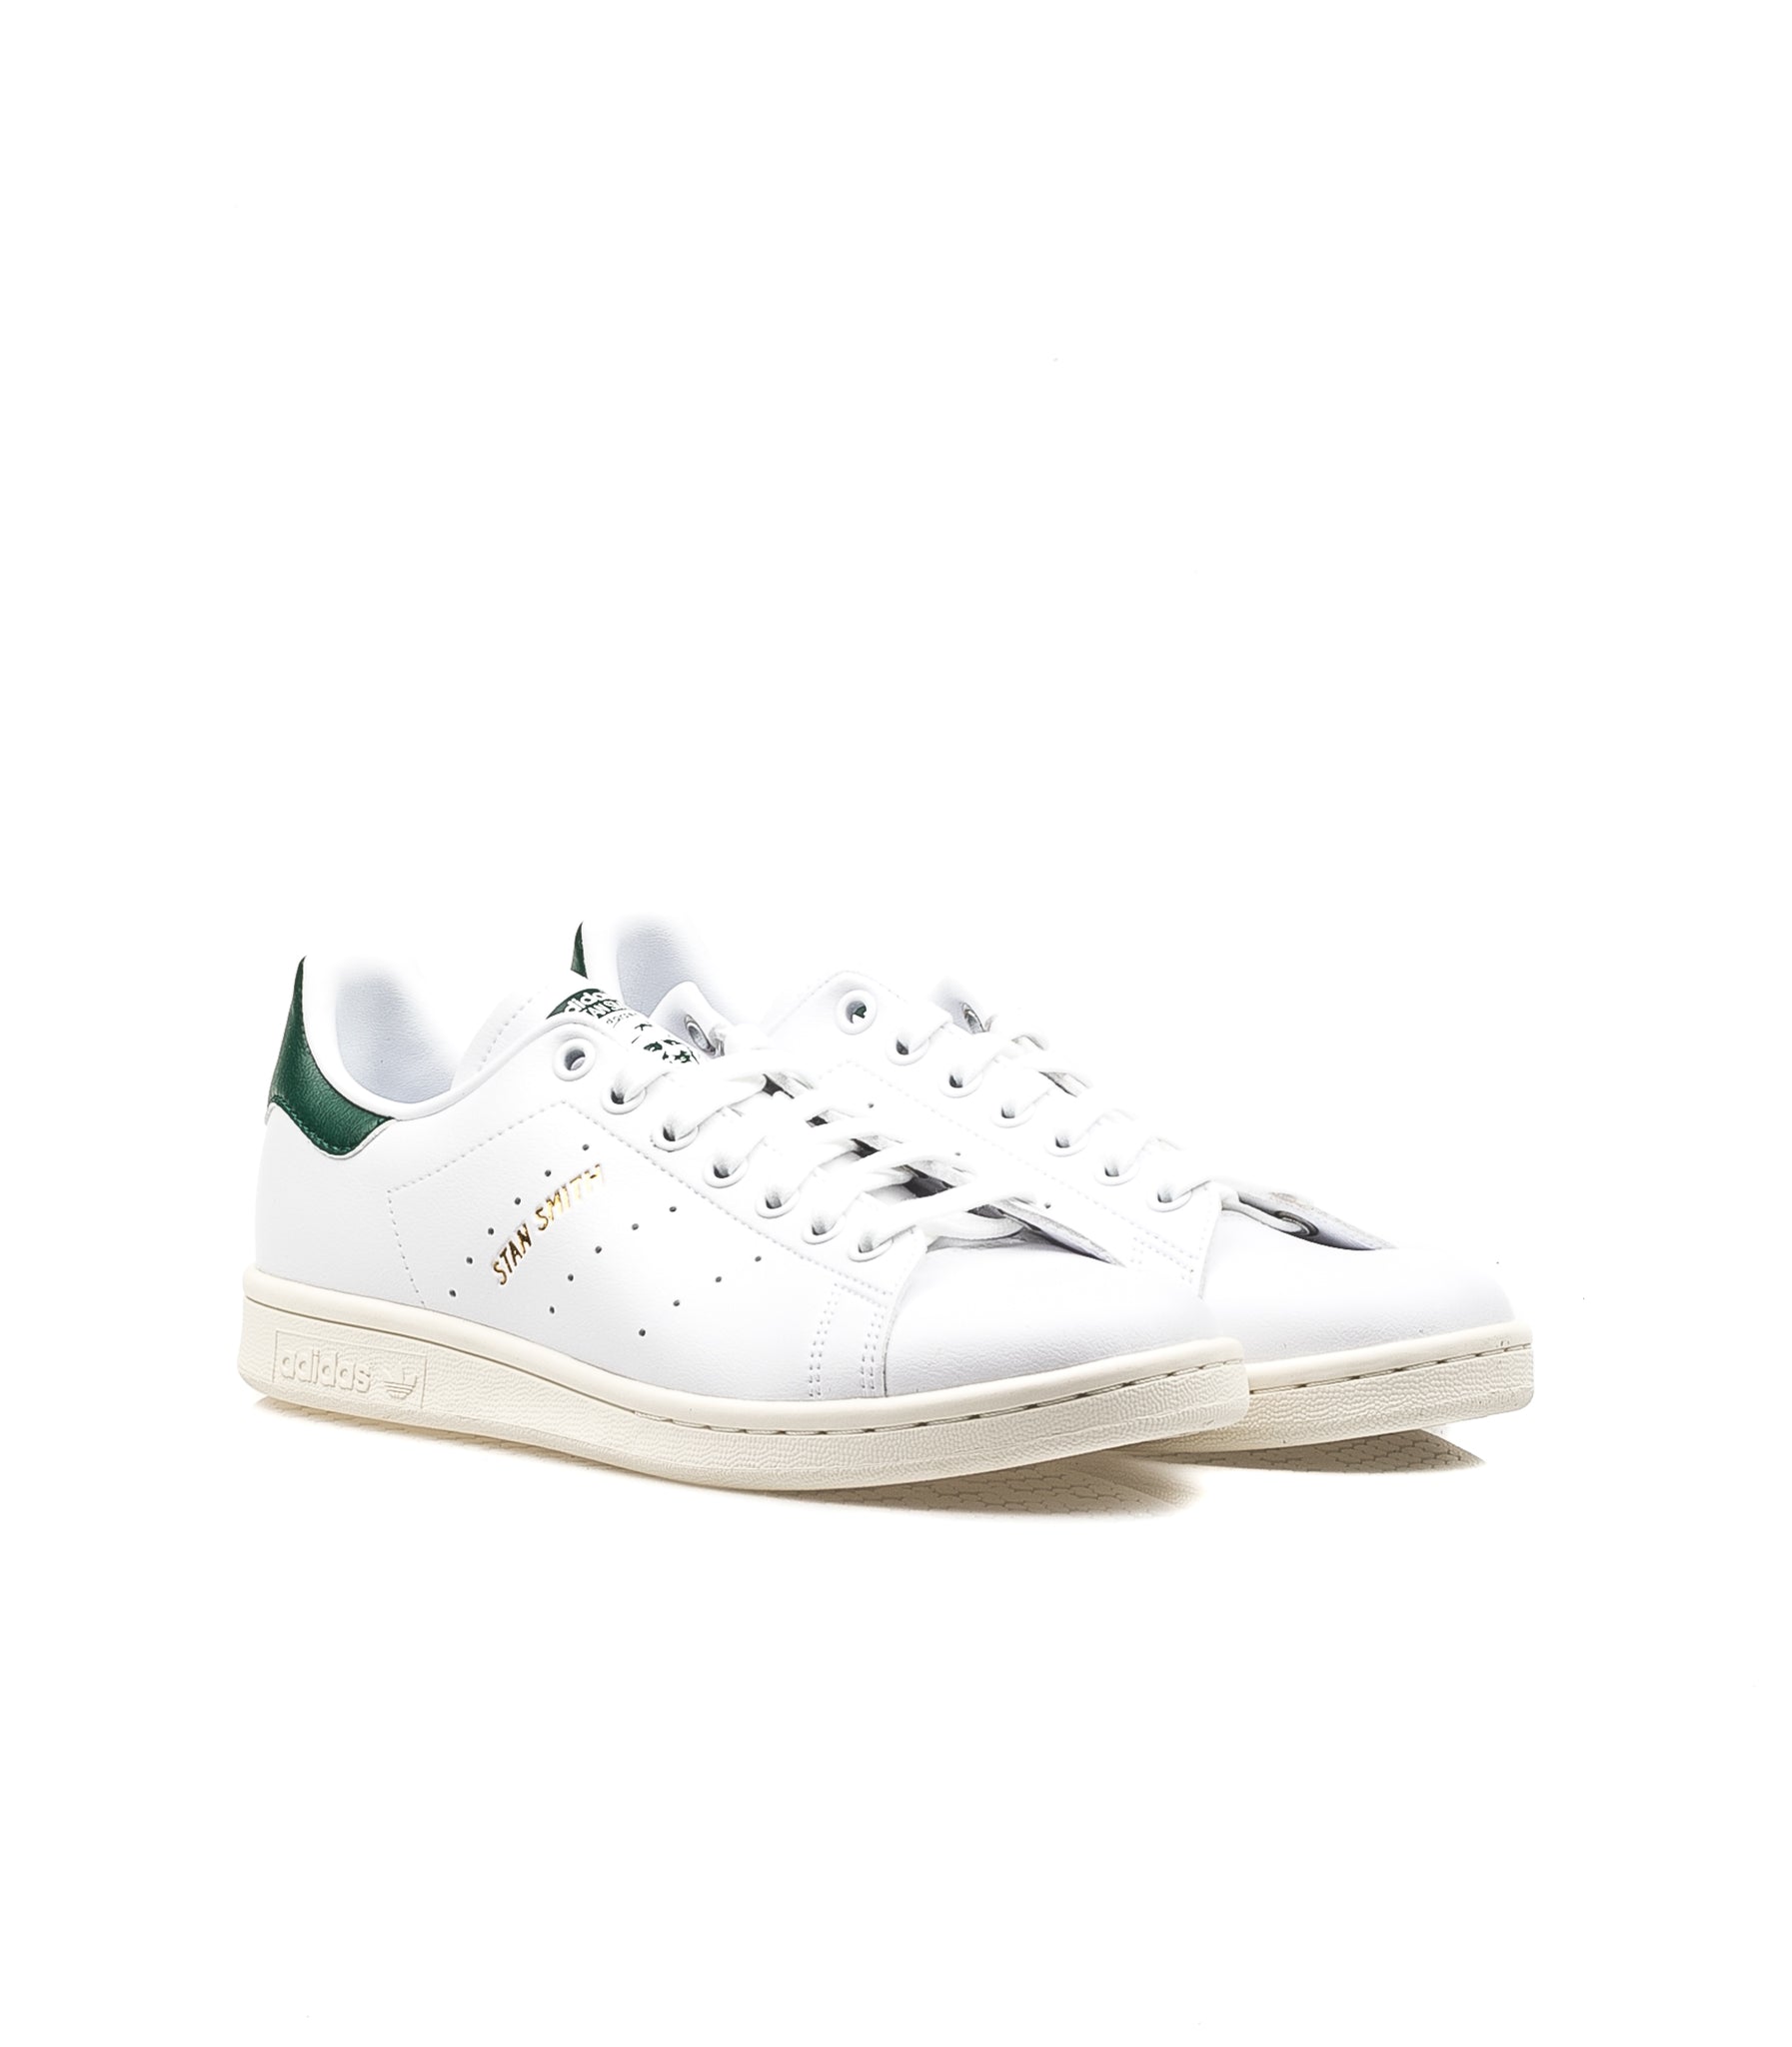 Adidas Stan Smith Fashion White Collegiate Green Prime Eco Green White Unisex